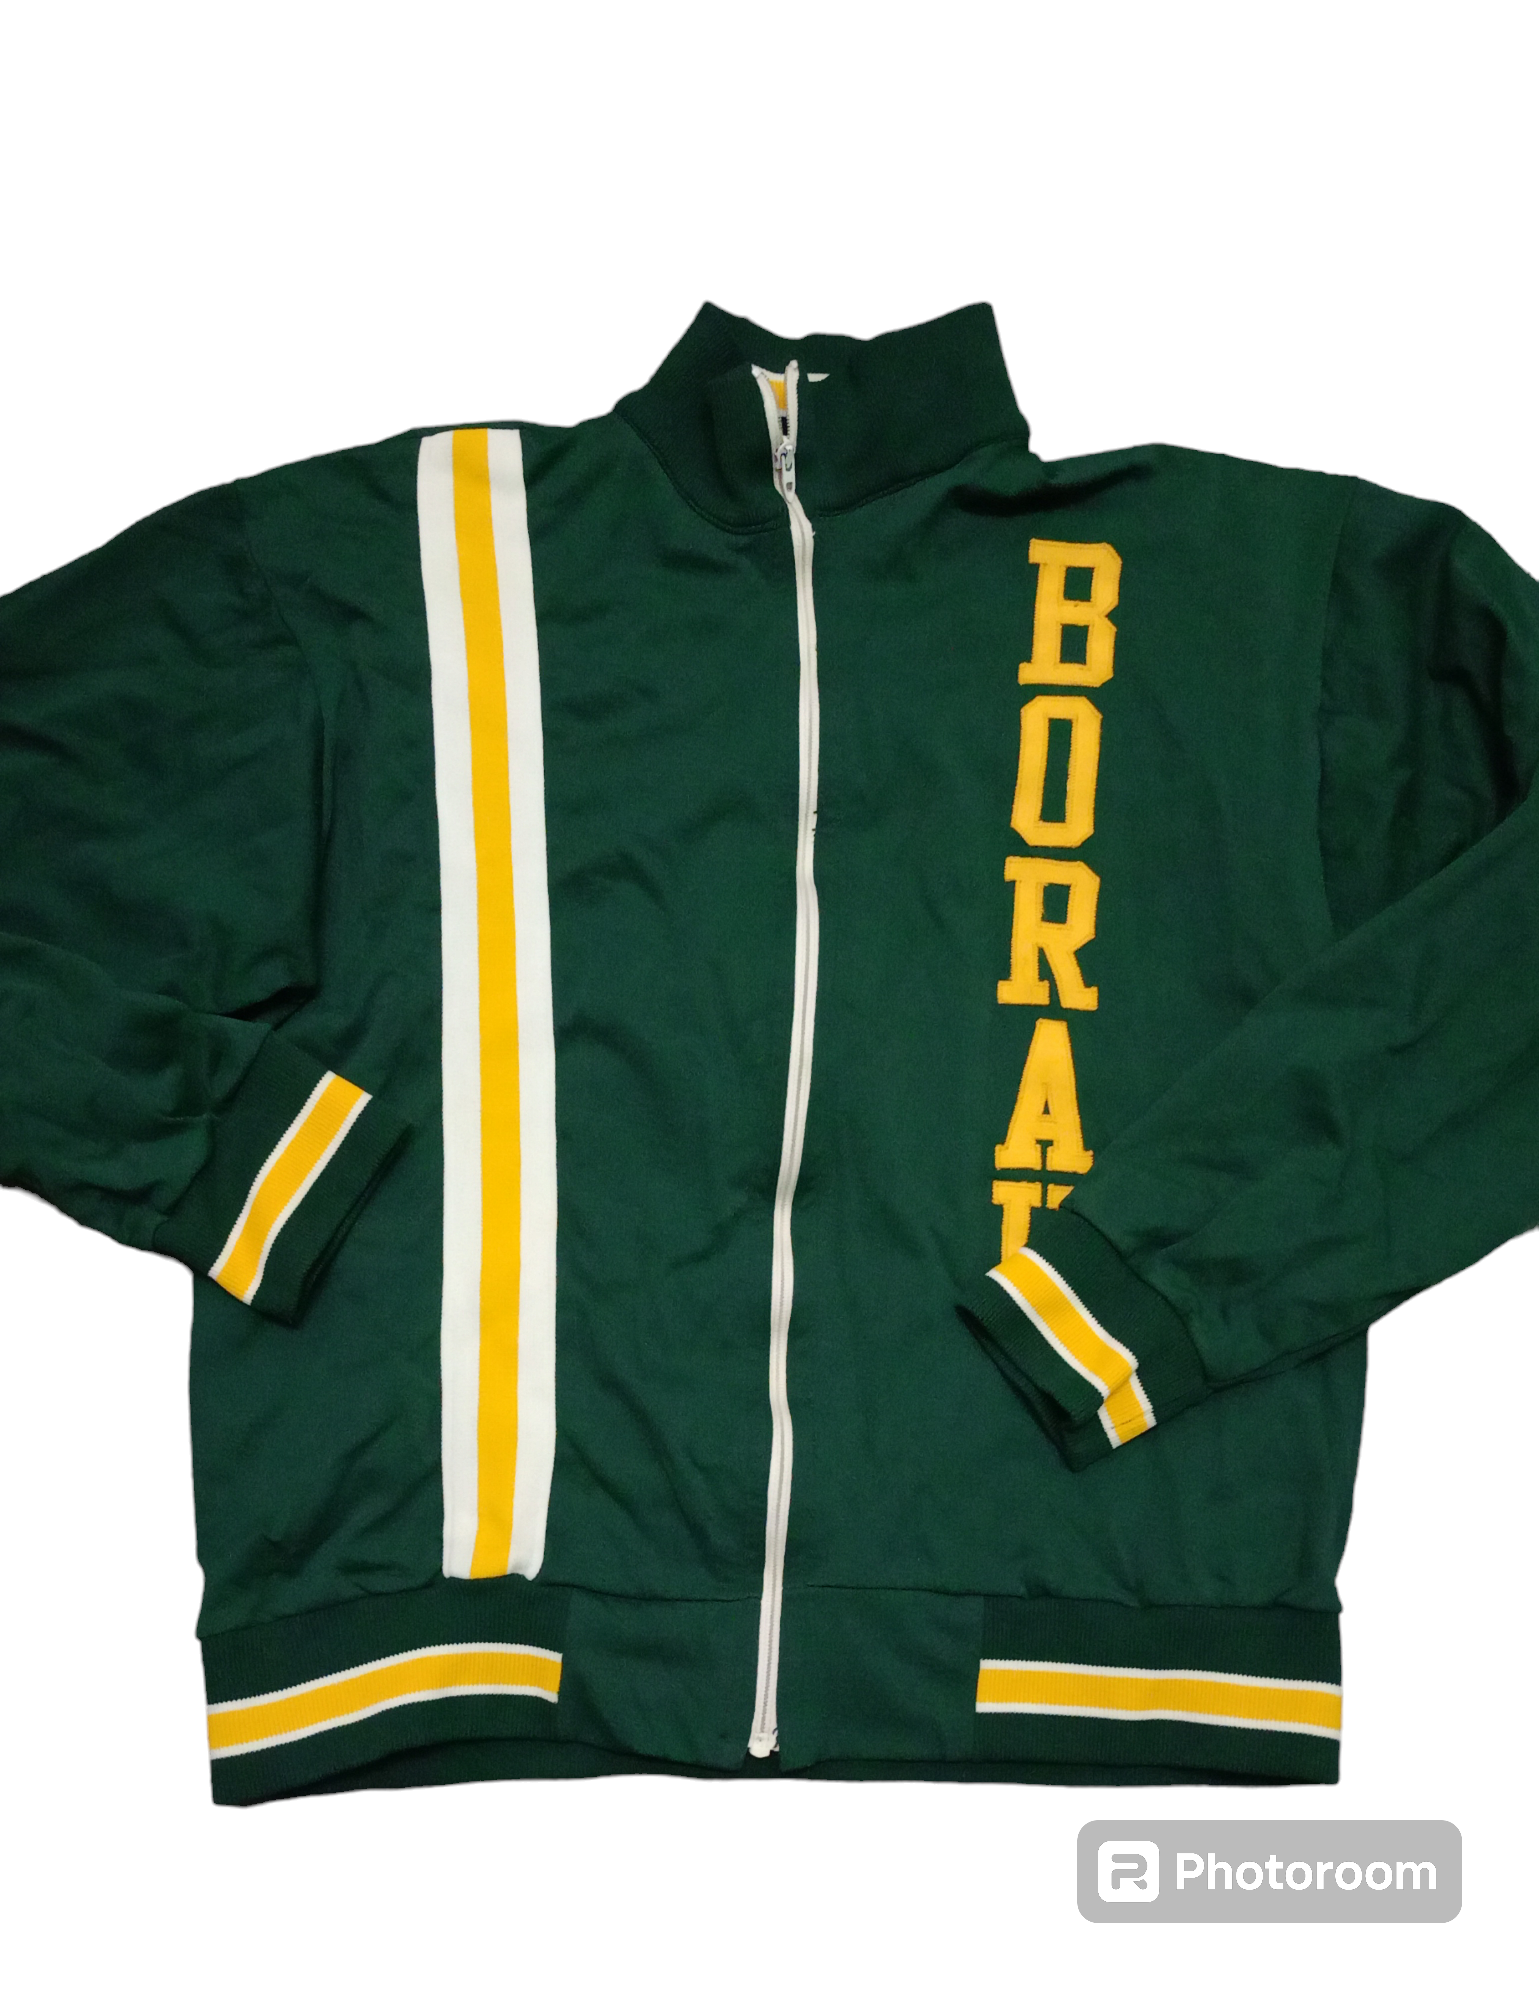 vintage training jacket - 1